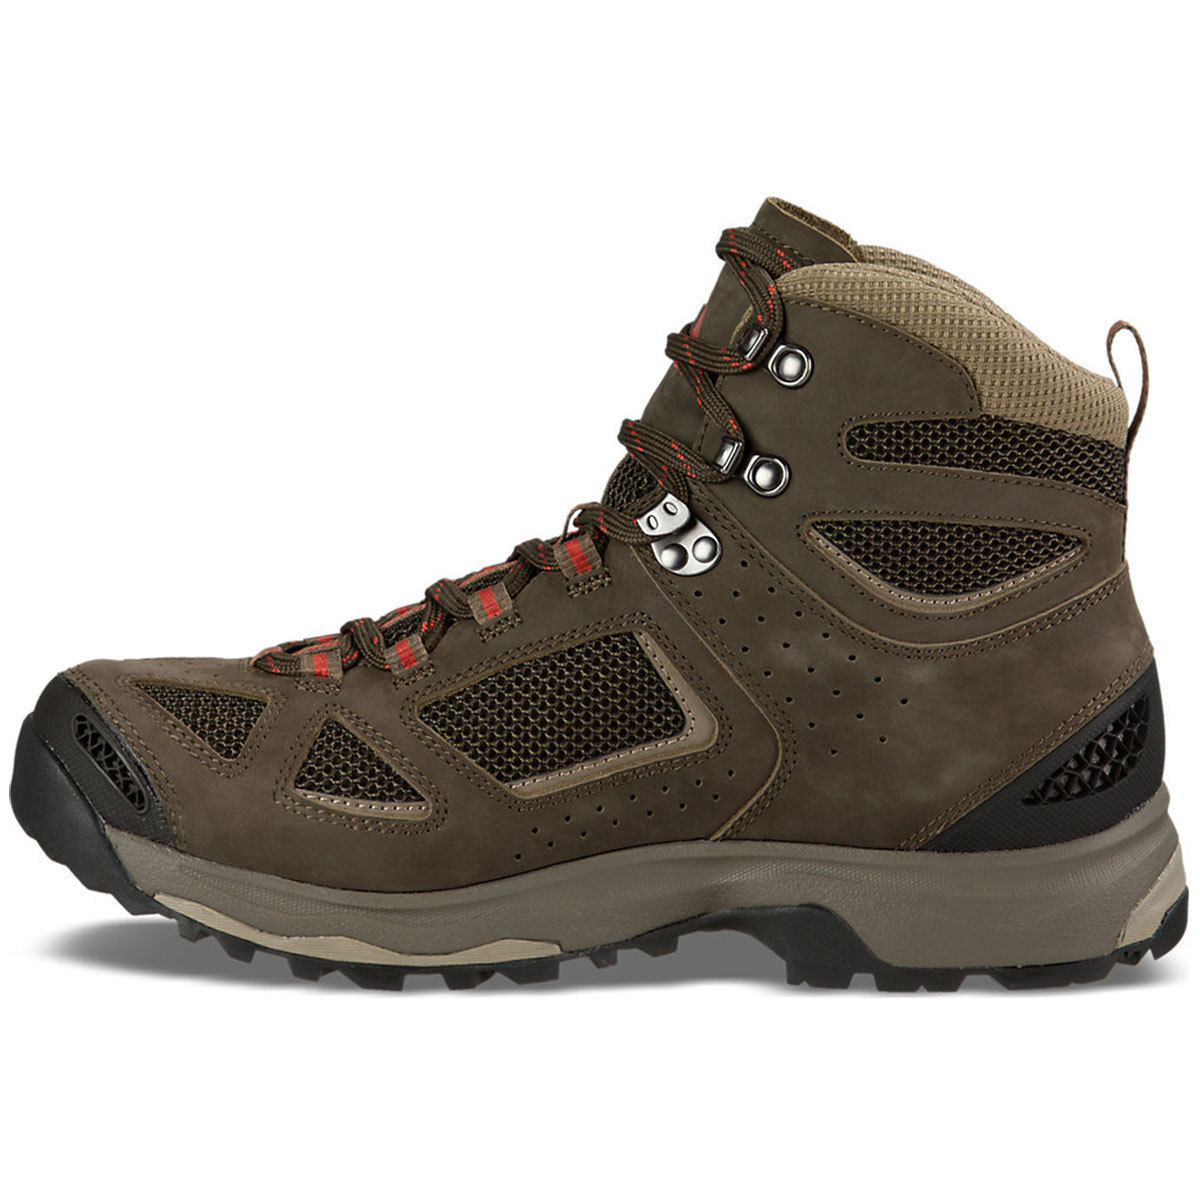 vasque men's breeze iii gtx hiking boots